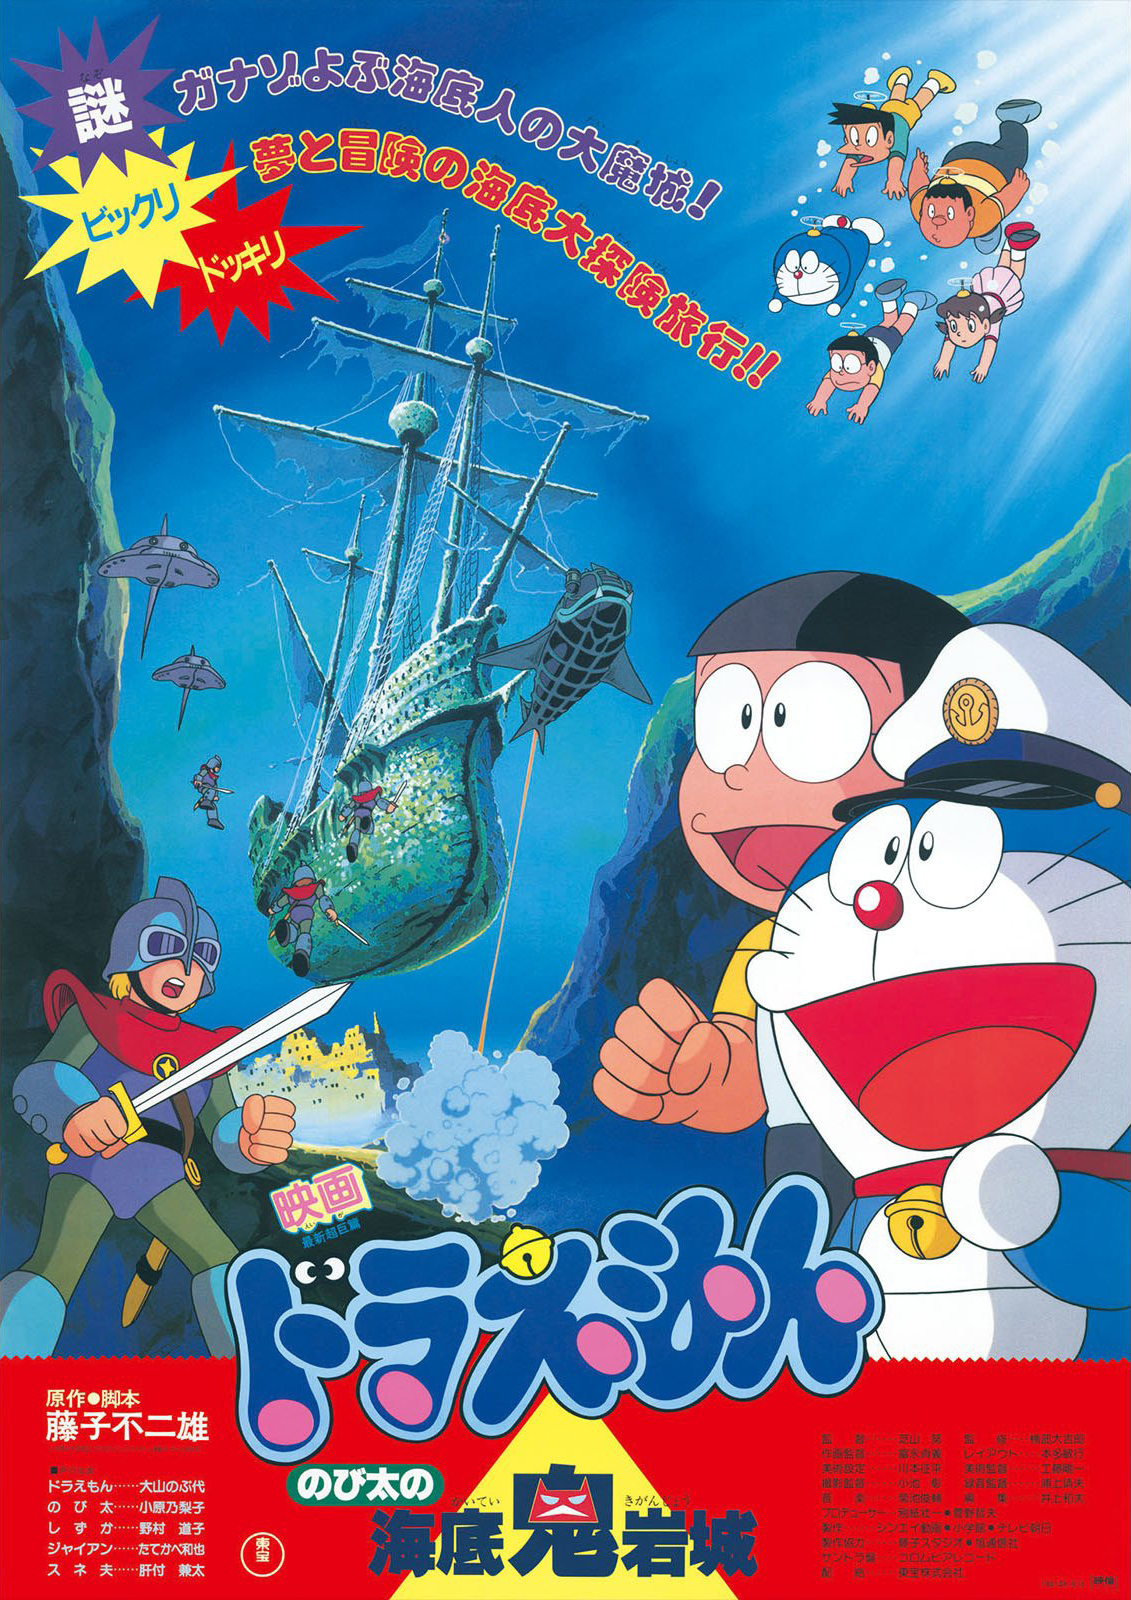 ดูหนังออนไลน์ Doraemon The Movie (1983) โดราเอมอนเดอะมูฟวี่ ตอน ตะลุยปราสาทใต้สมุทร